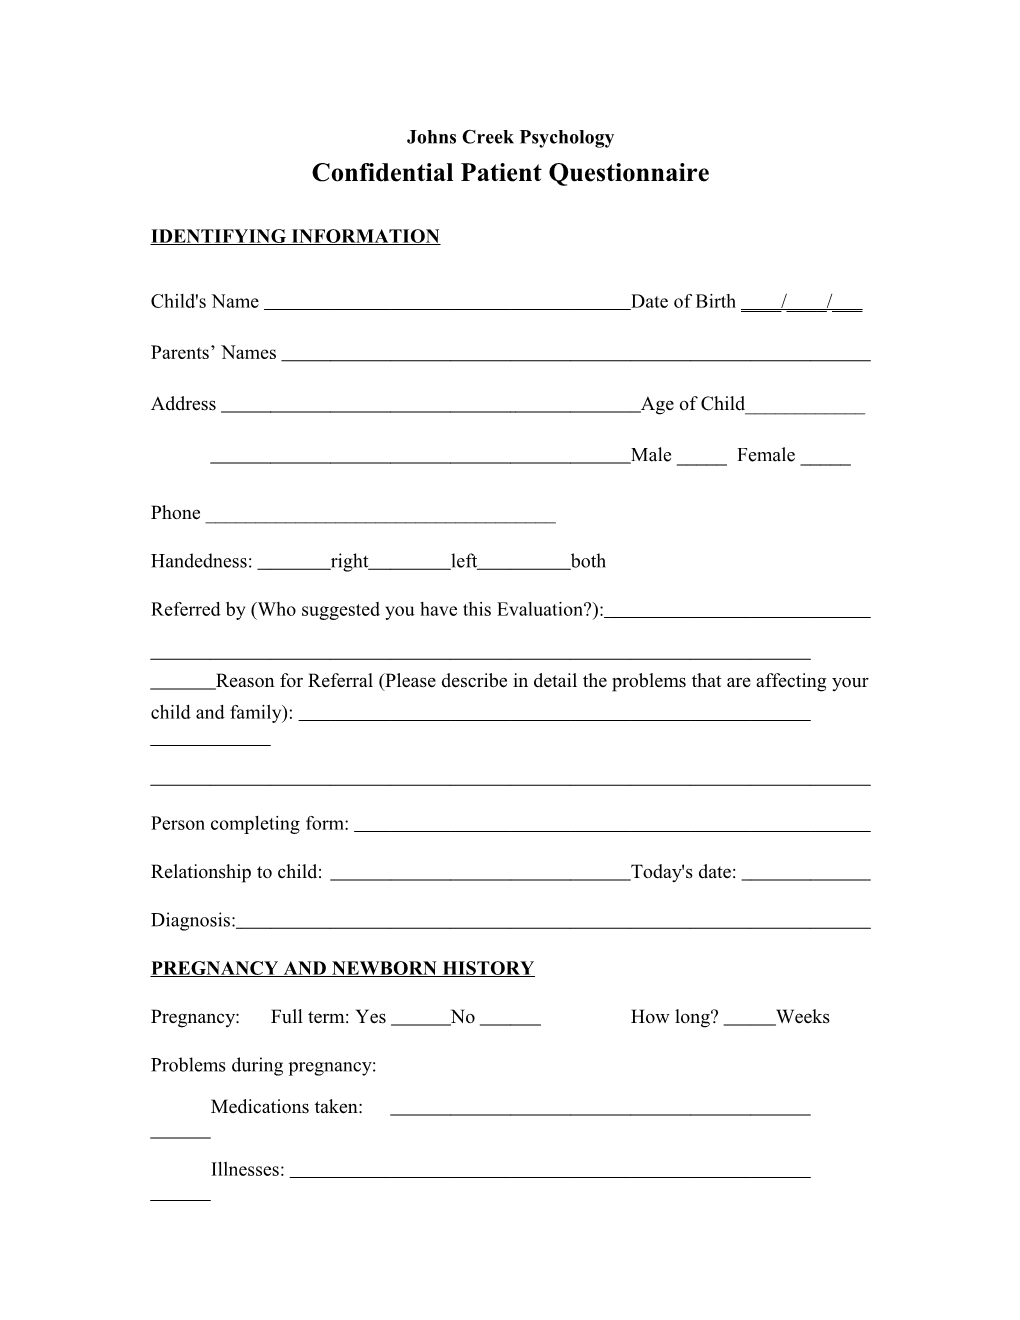 Confidential Patient Questionnaire